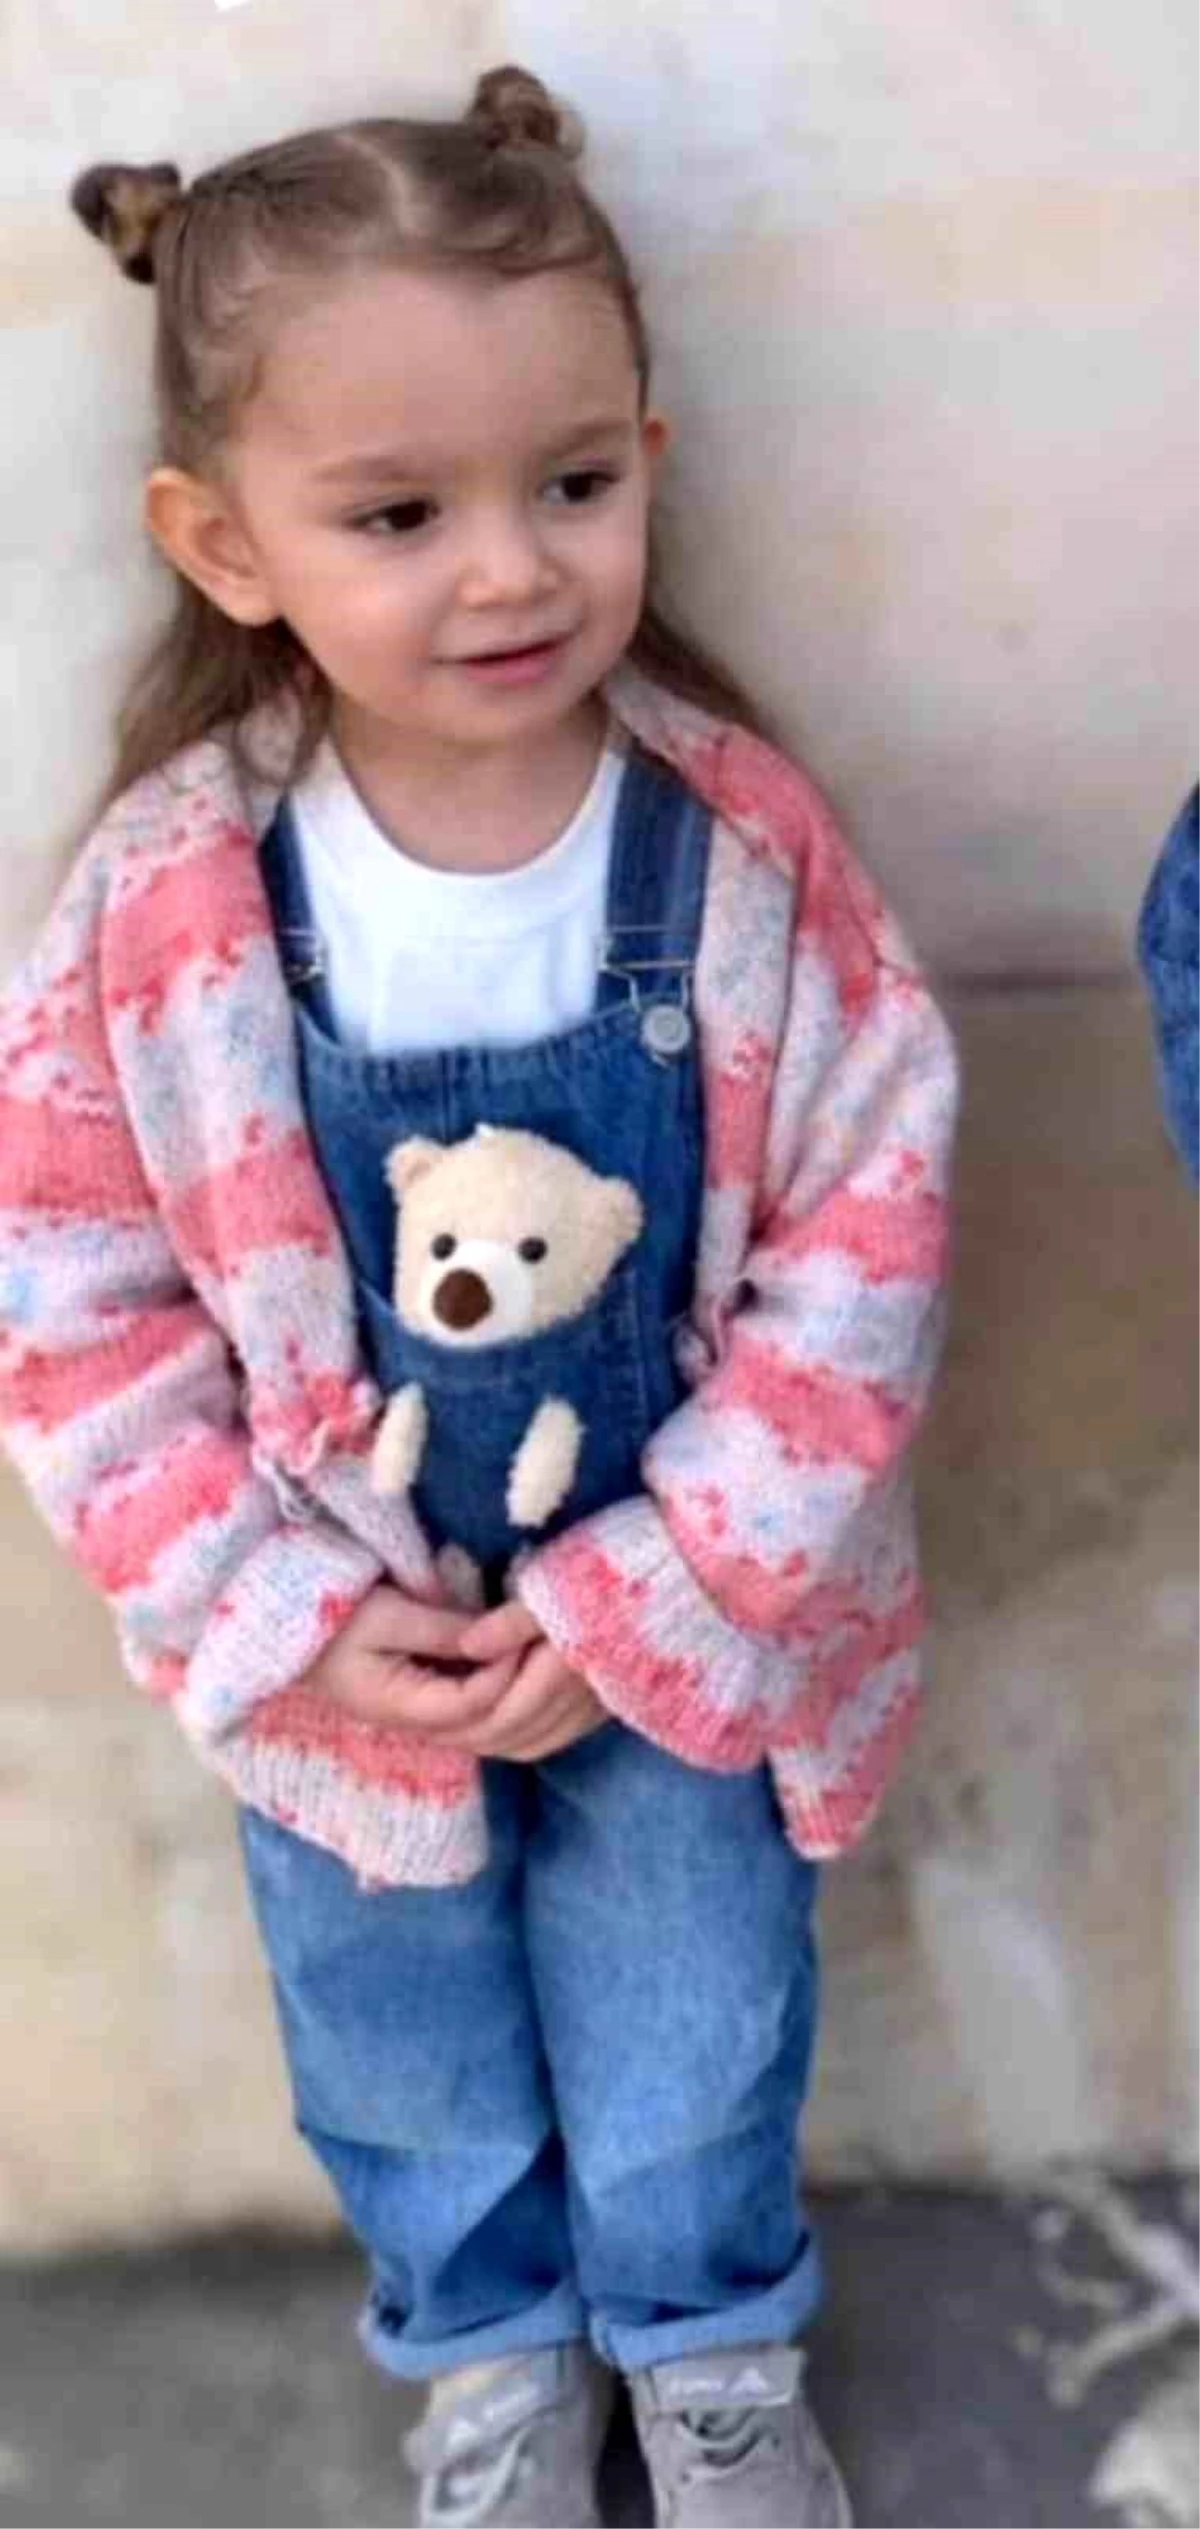 Mardin’de 4 yaşındaki çocuk balkondan düşerek hayatını kaybetti